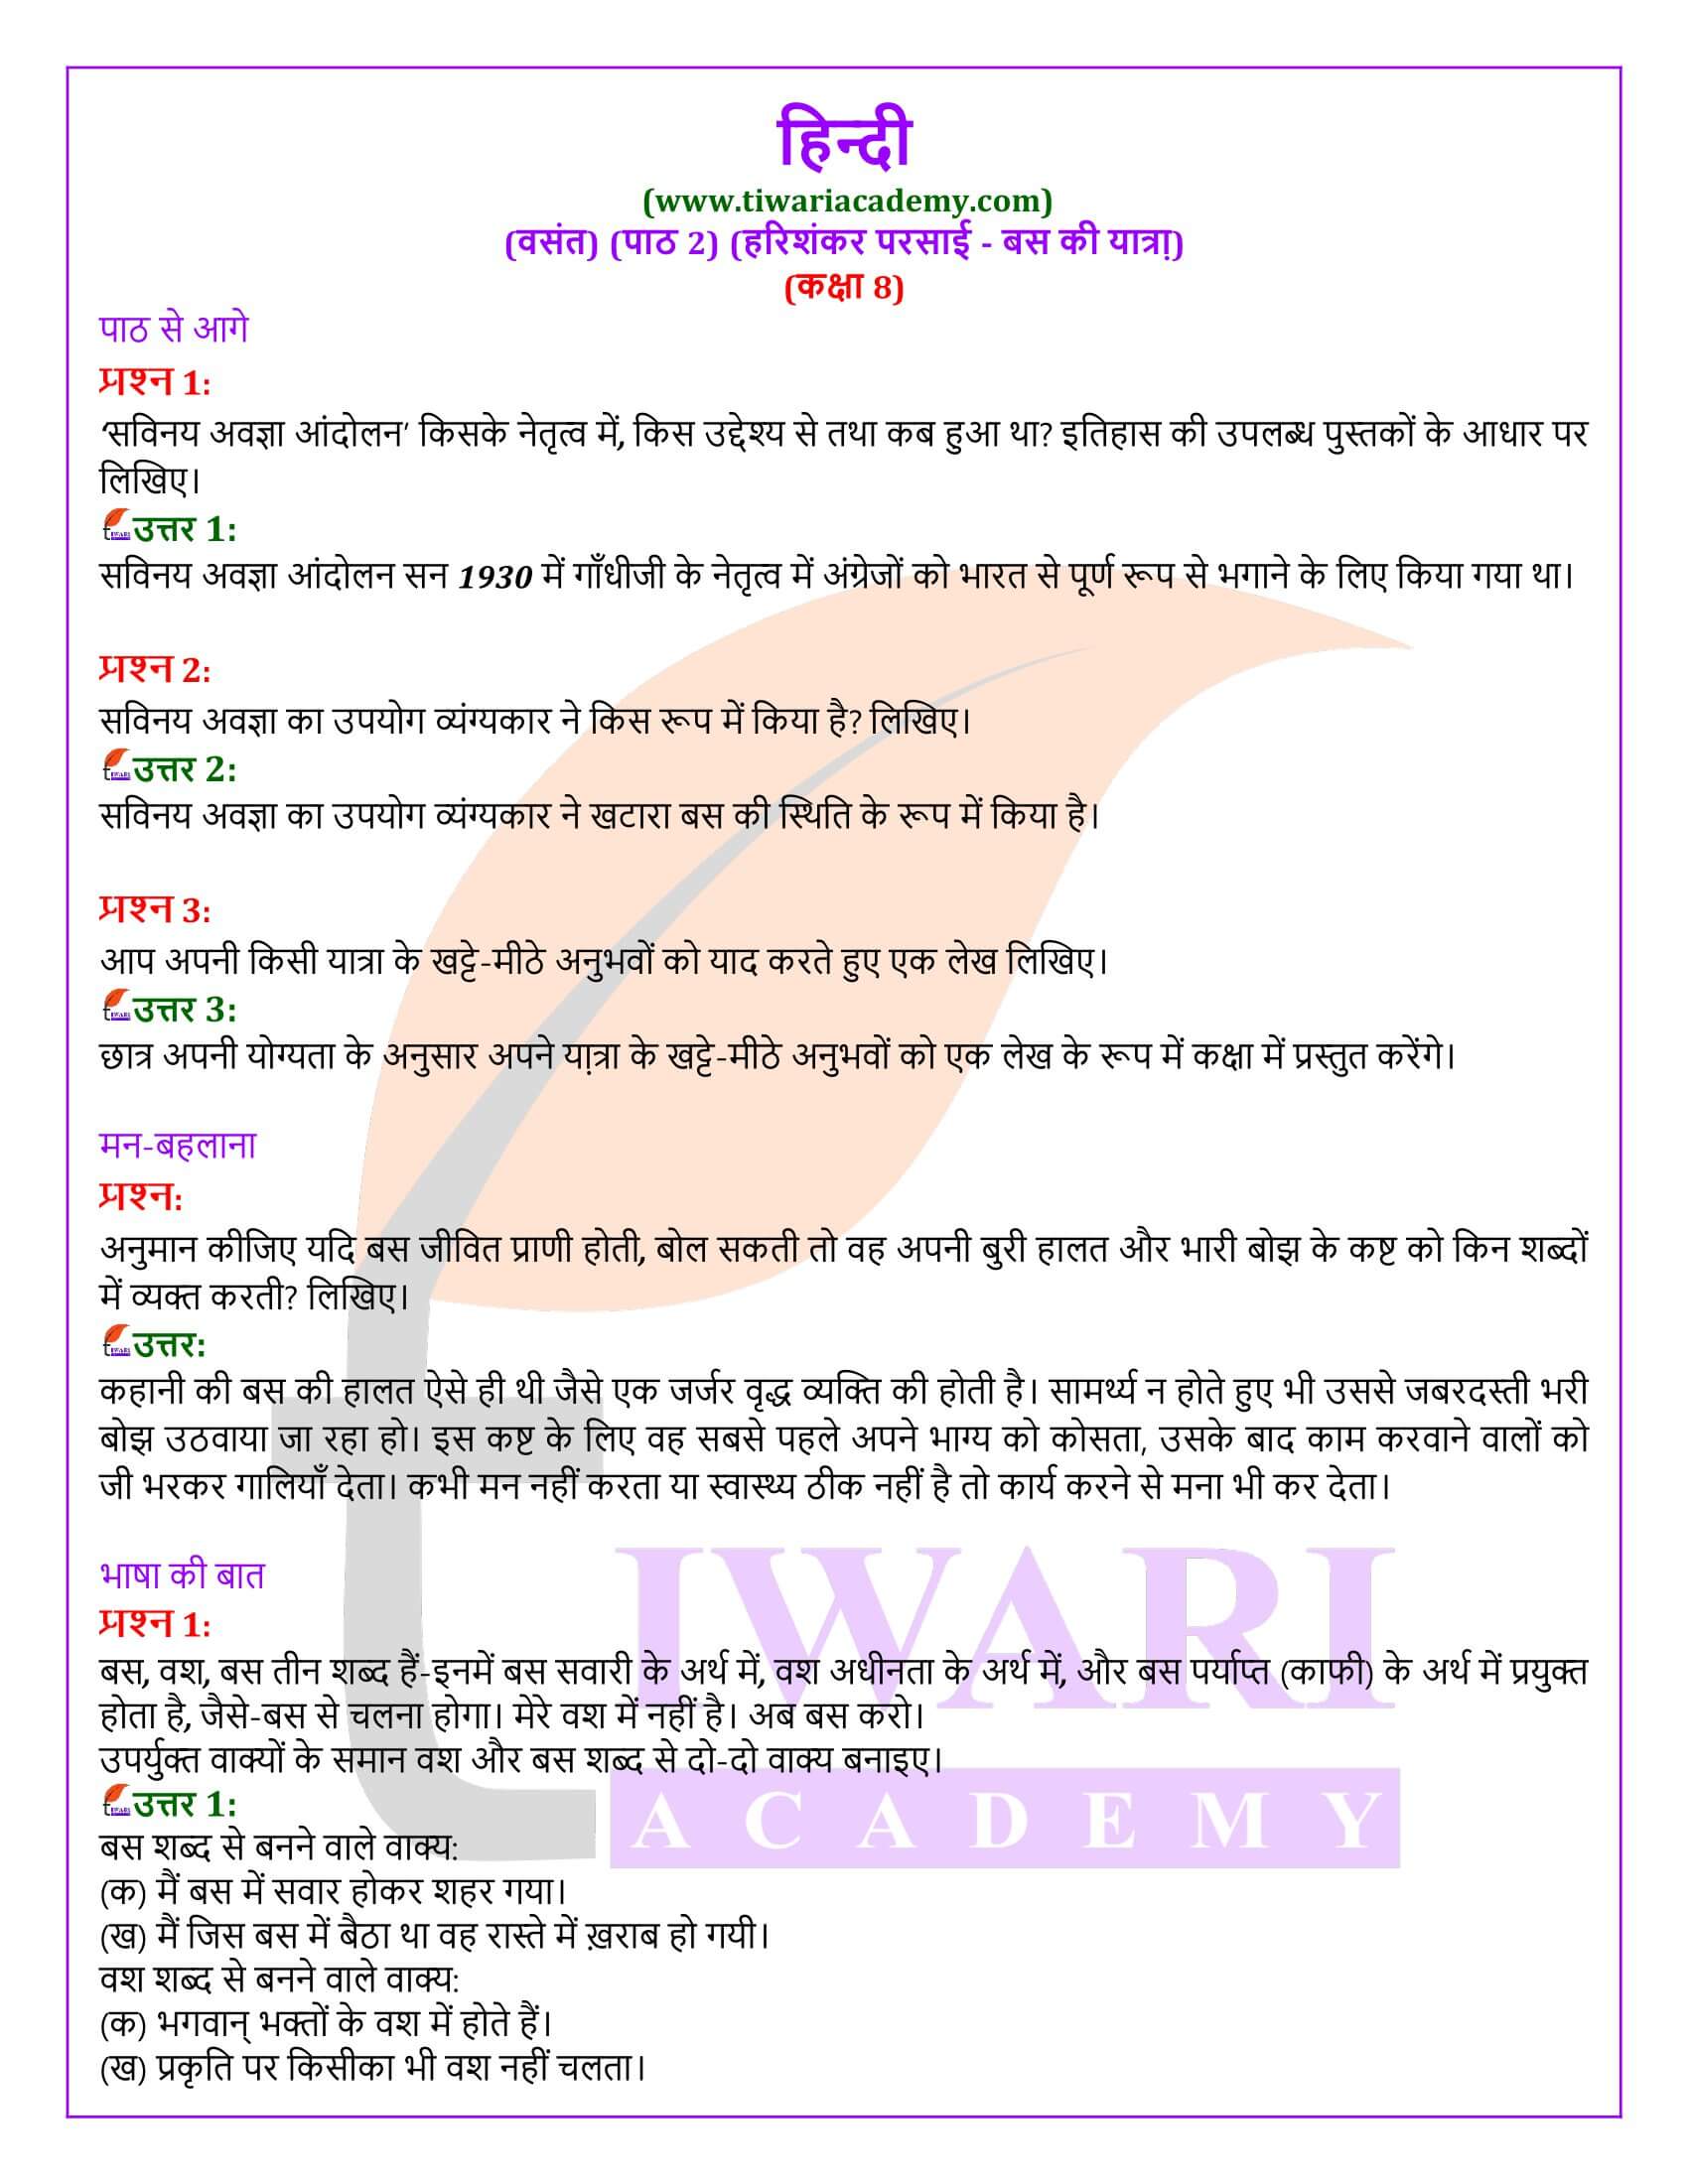 कक्षा 8 हिंदी वसंत अध्याय 2 बस की यात्रा